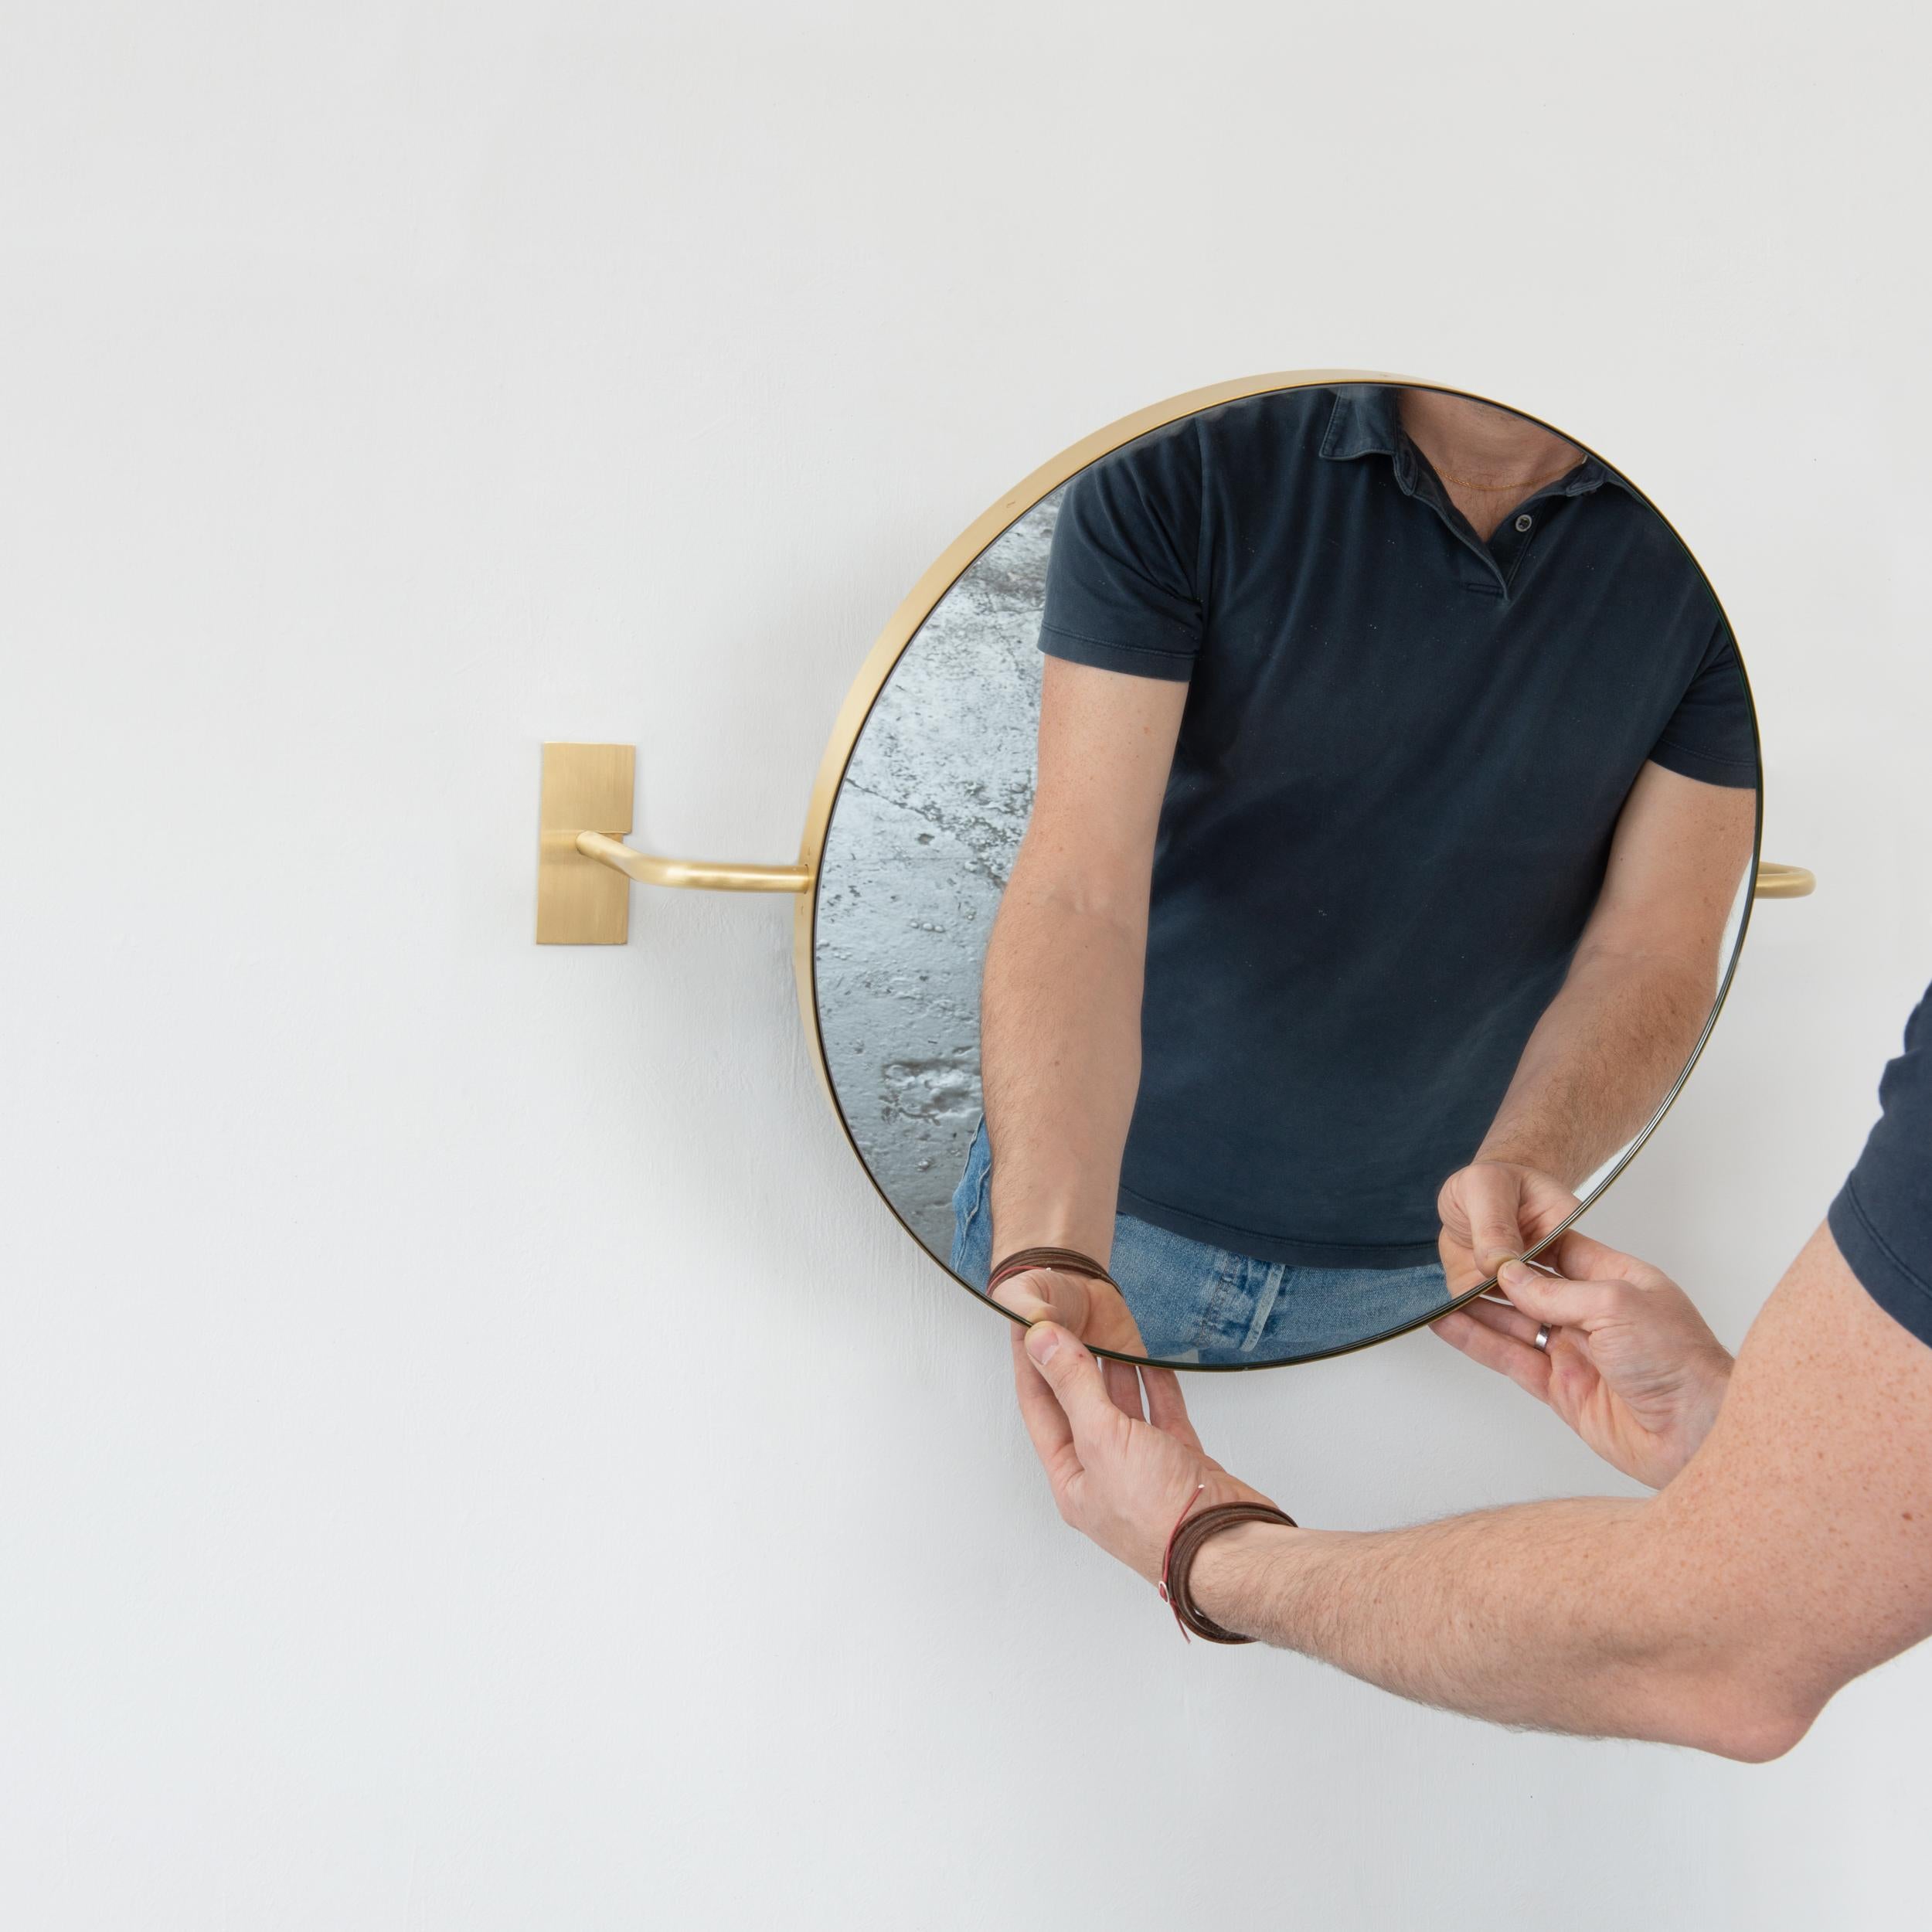 Conçu et fabriqué à la main à Londres, au Royaume-Uni, notre tout nouveau miroir Vorso™ est un ajout ingénieux, original et élégant à notre gamme flexible de solutions de miroirs suspendus au mur, suspendus au plafond et adossés au mur.

Les deux